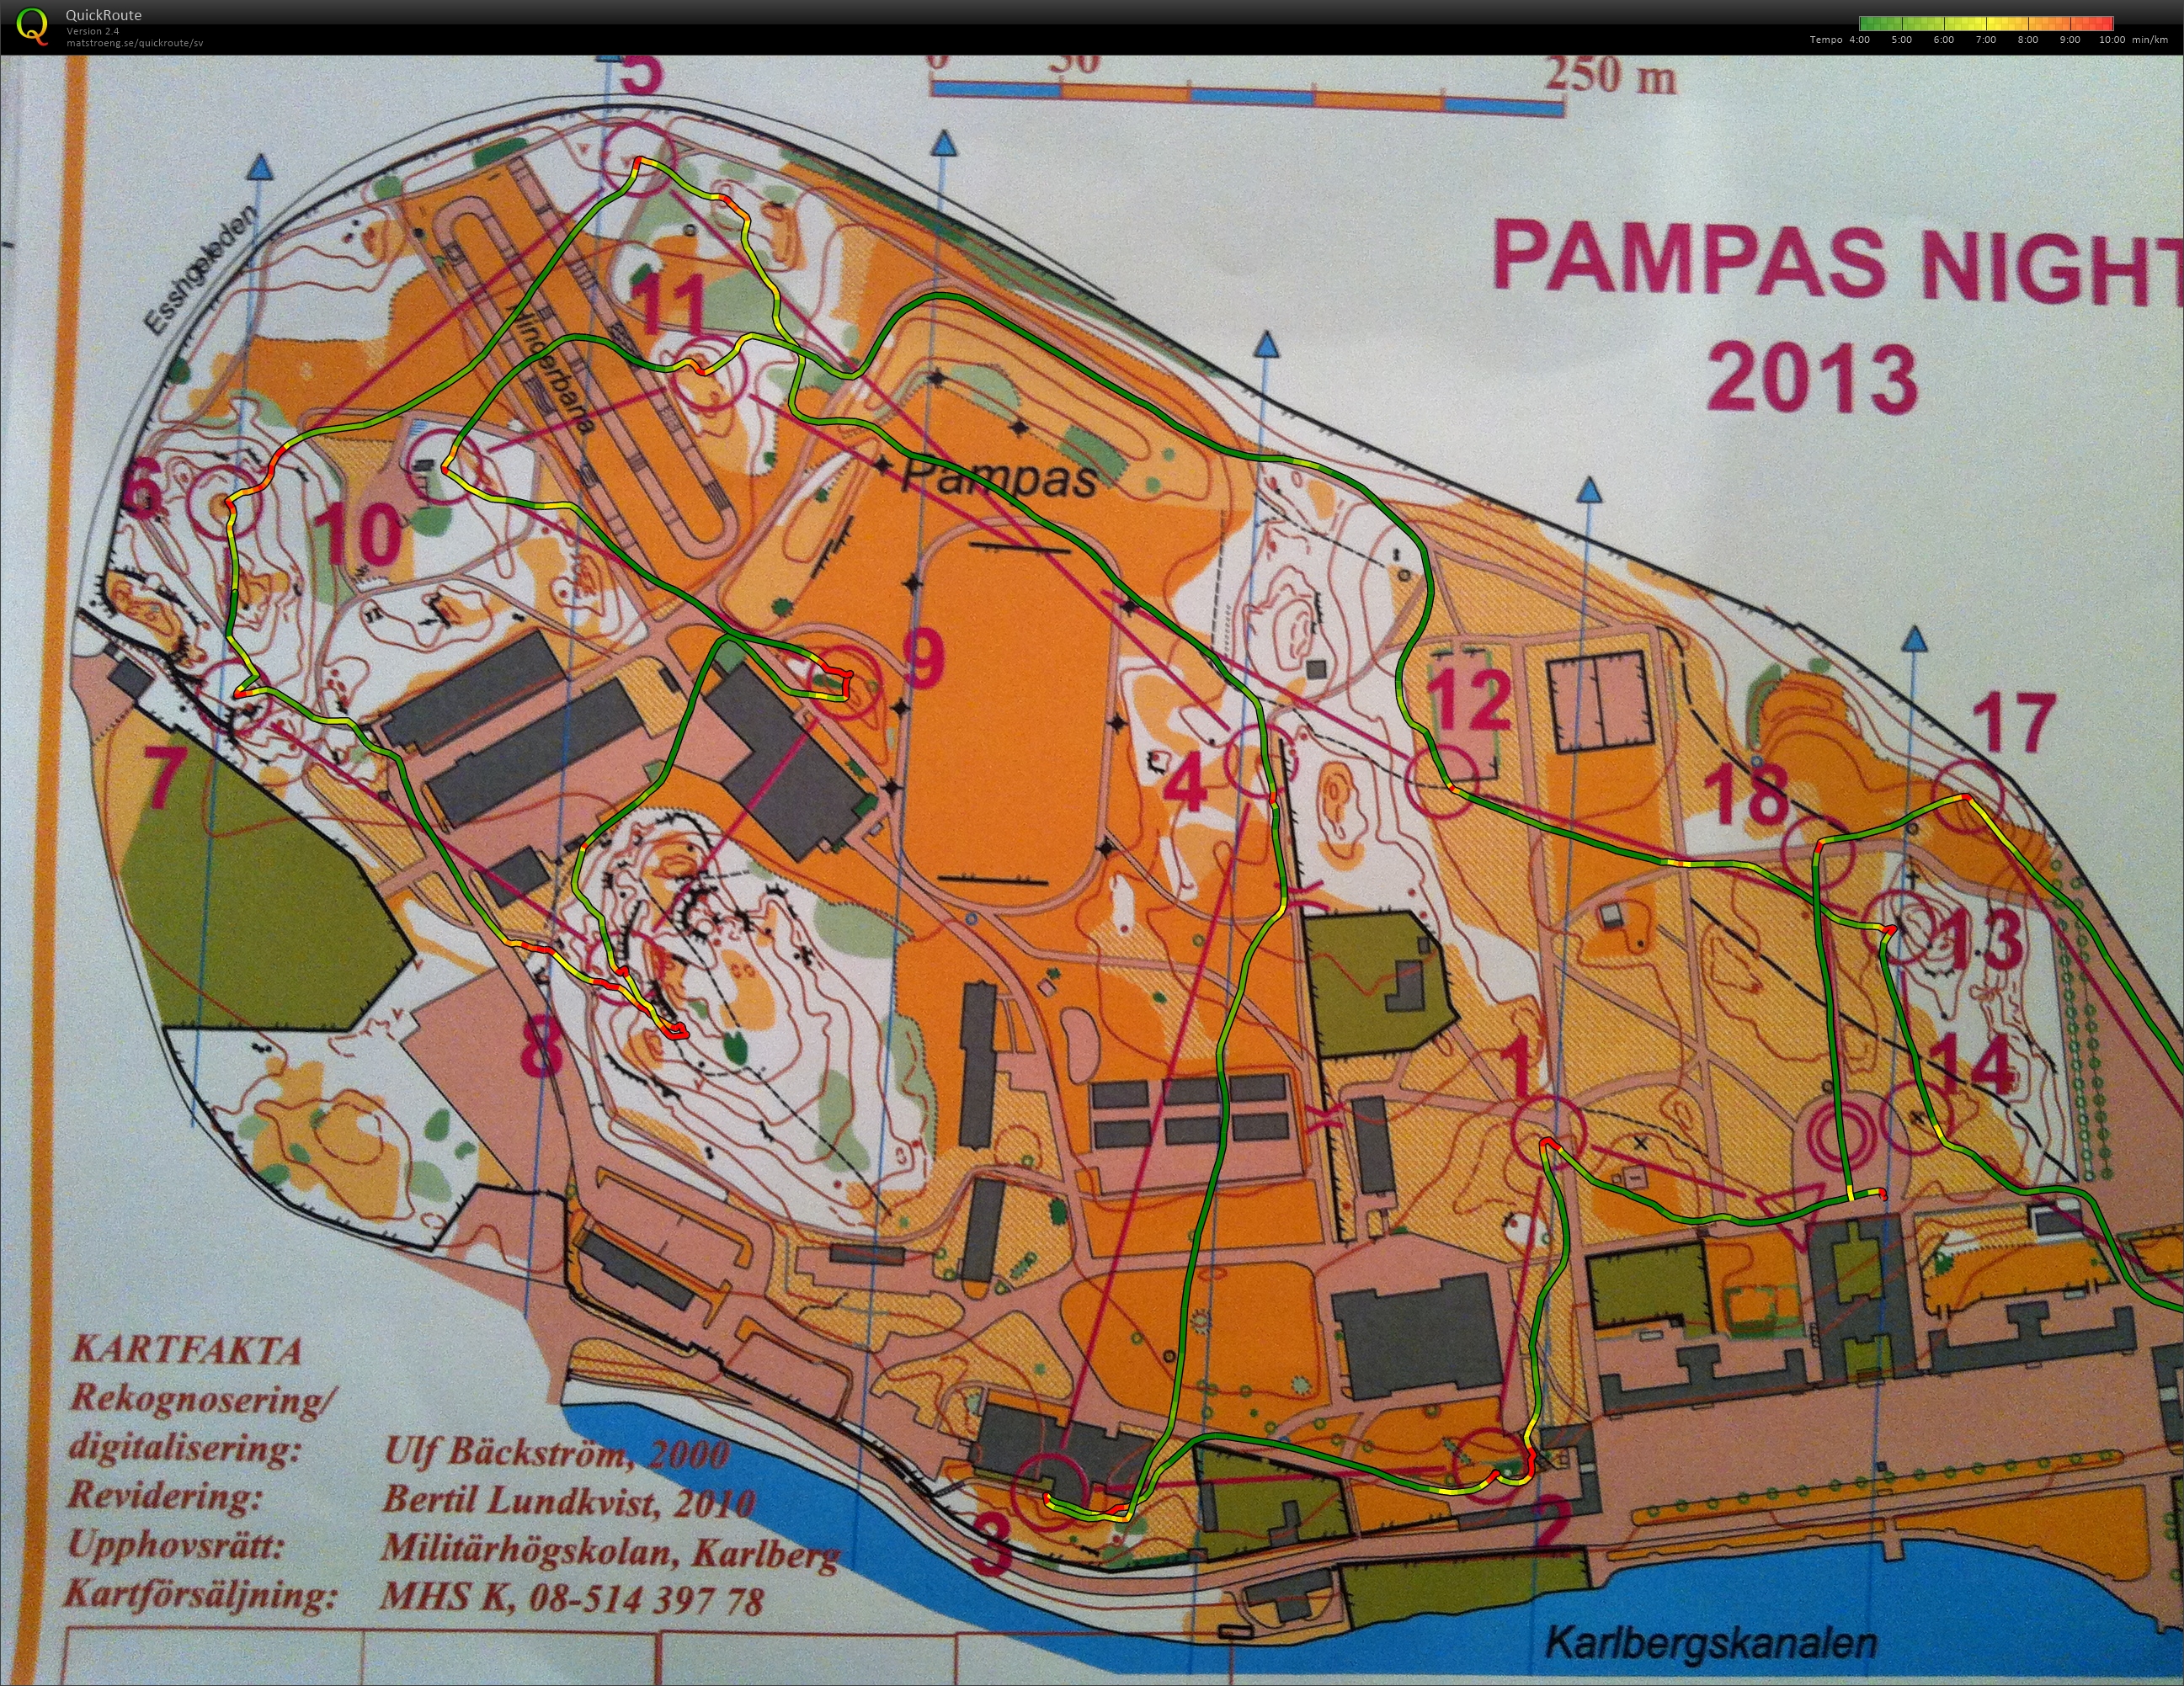 Pampas Night 2013 (2013-10-23) (26.01.2015)